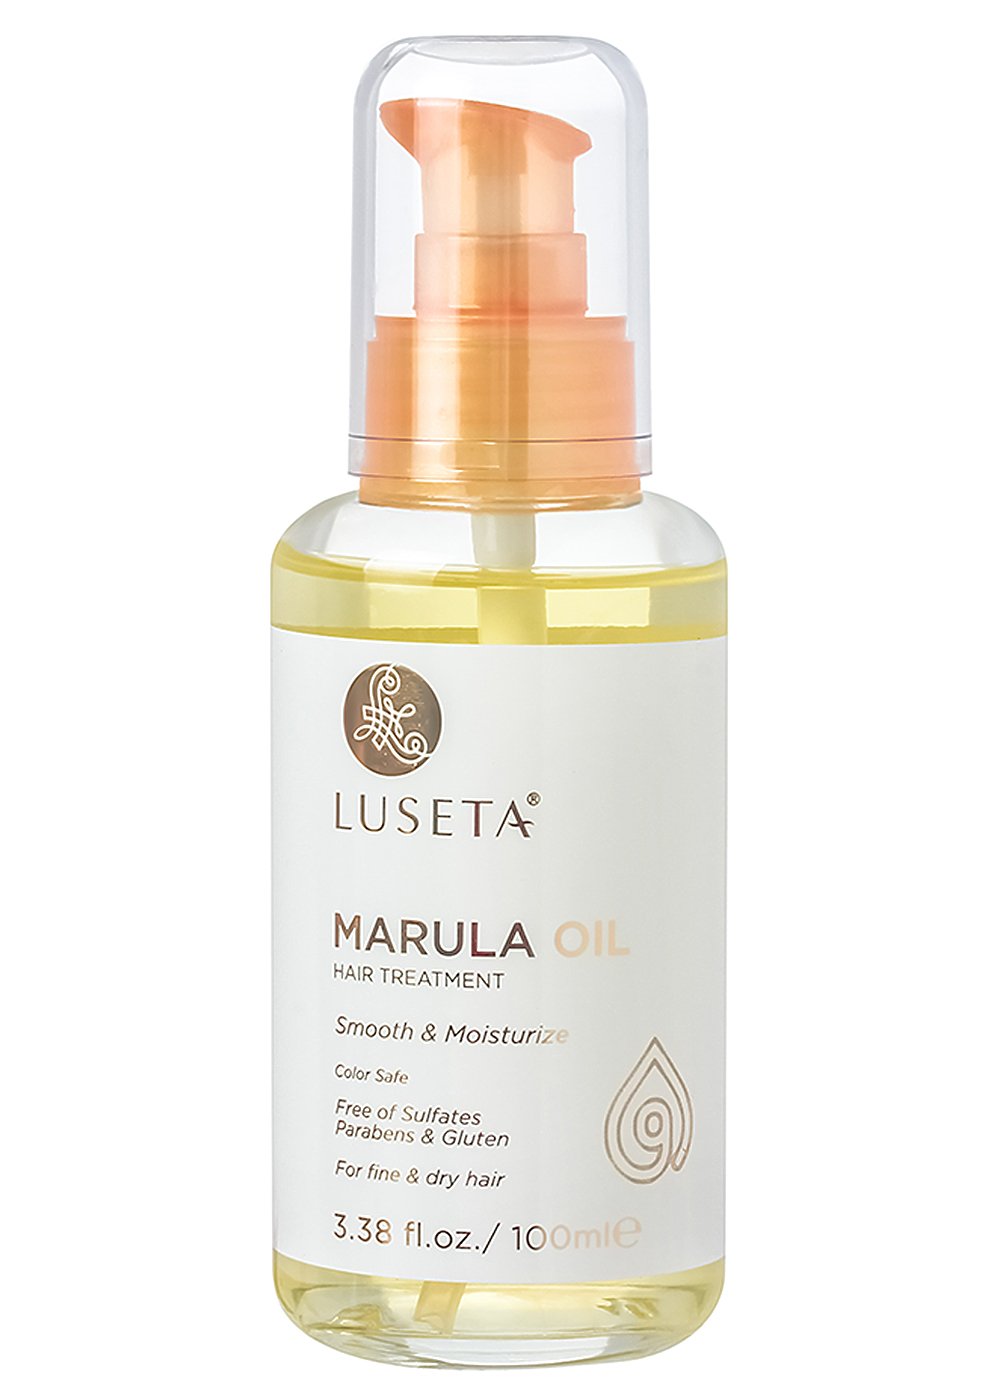 Luseta Marula Oil Hair Treatment for Fine & Dry Hair [...]